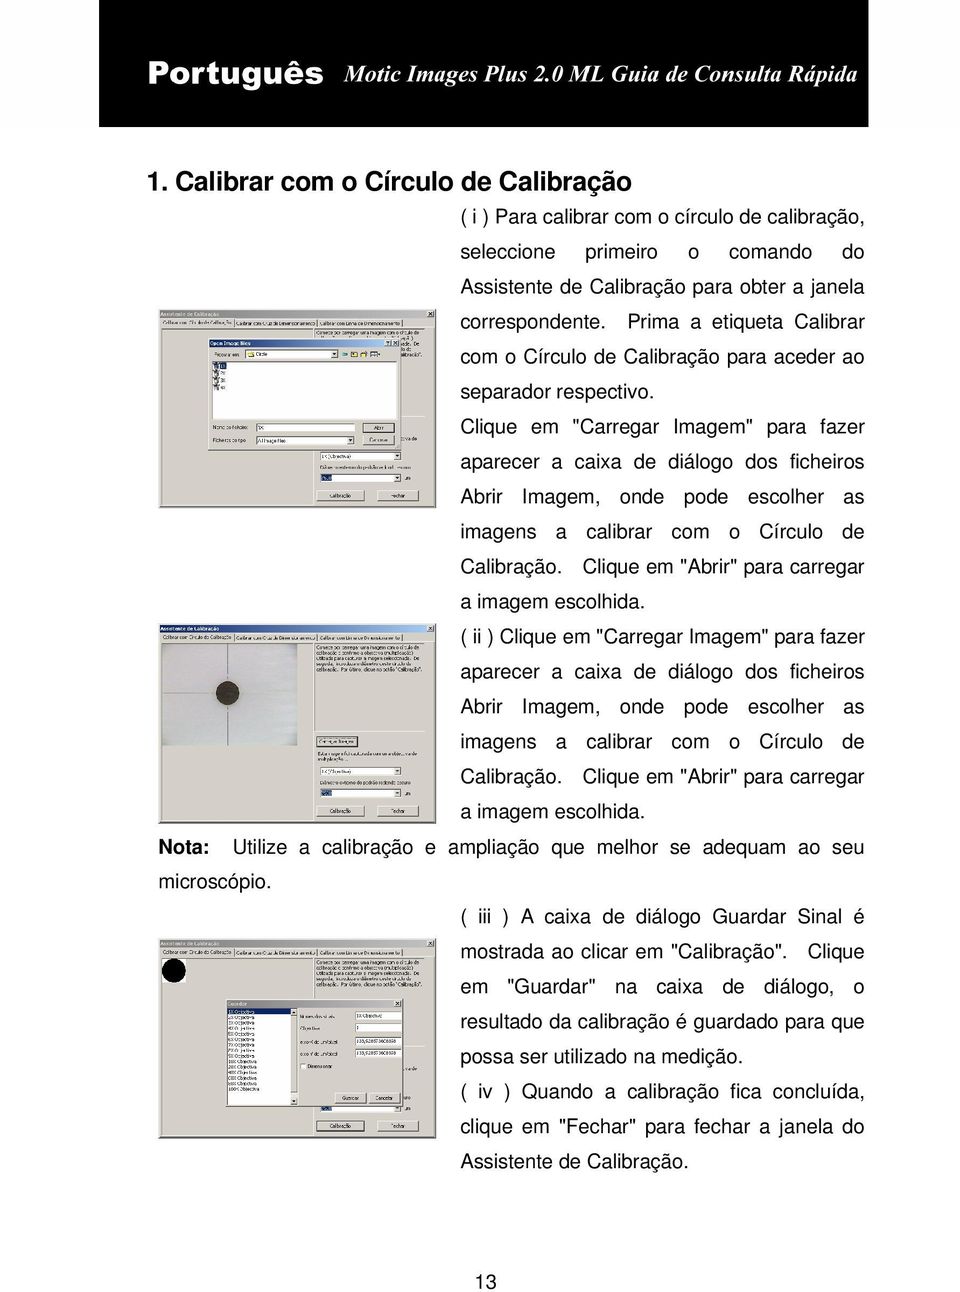 Clique em "Carregar Imagem" para fazer aparecer a caixa de diálogo dos ficheiros Abrir Imagem, onde pode escolher as imagens a calibrar com o Círculo de Calibração.